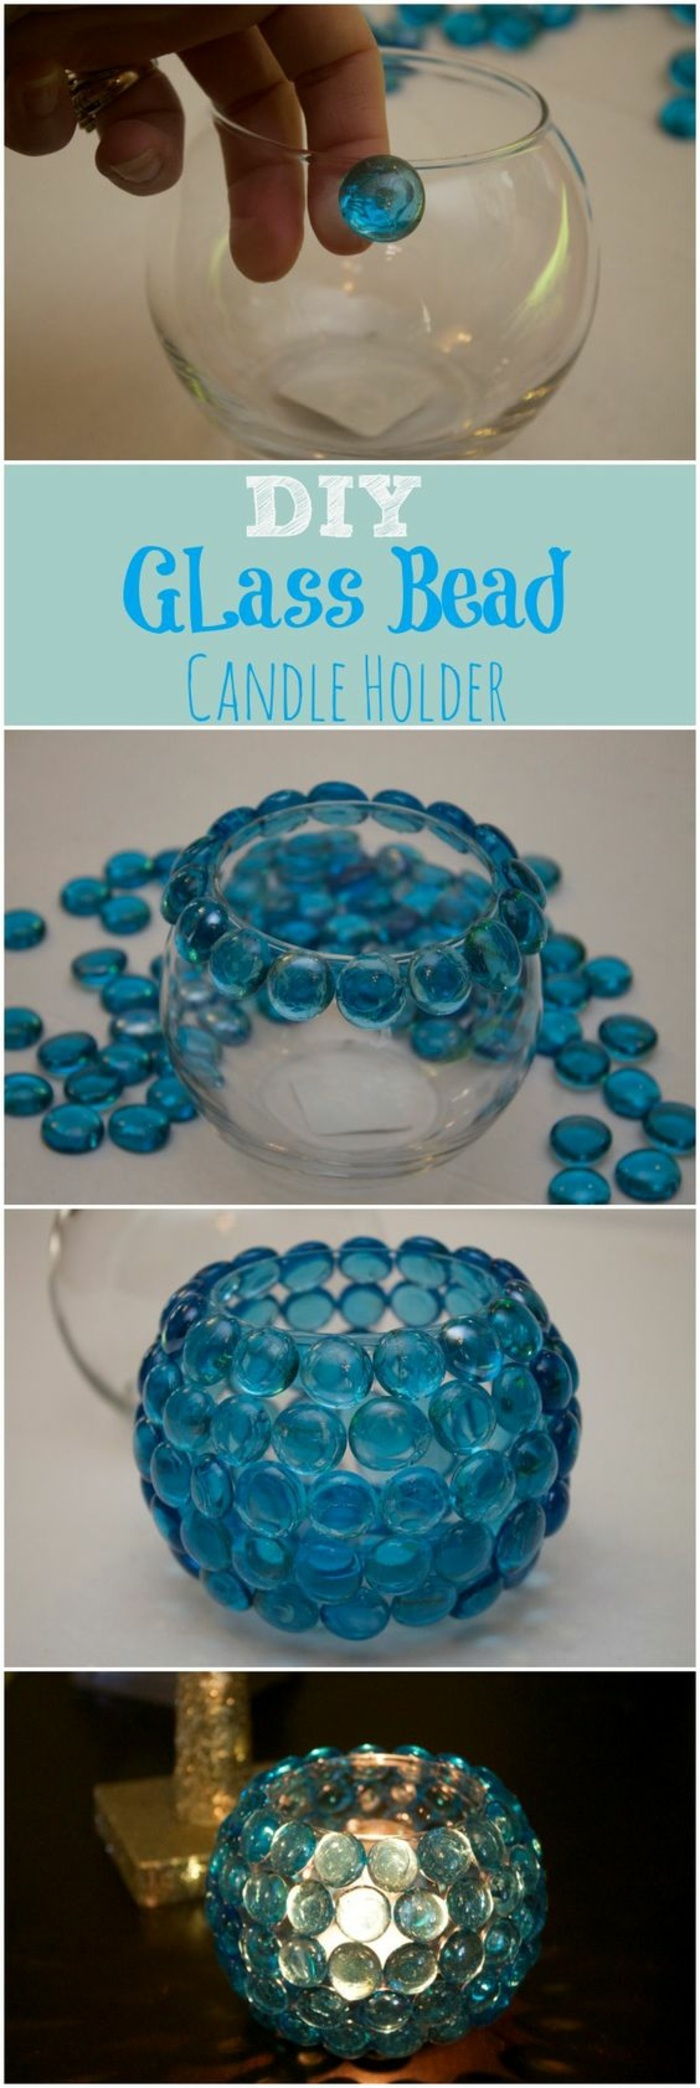 Versier ronde glazen vaas met blauwe strass steentjes